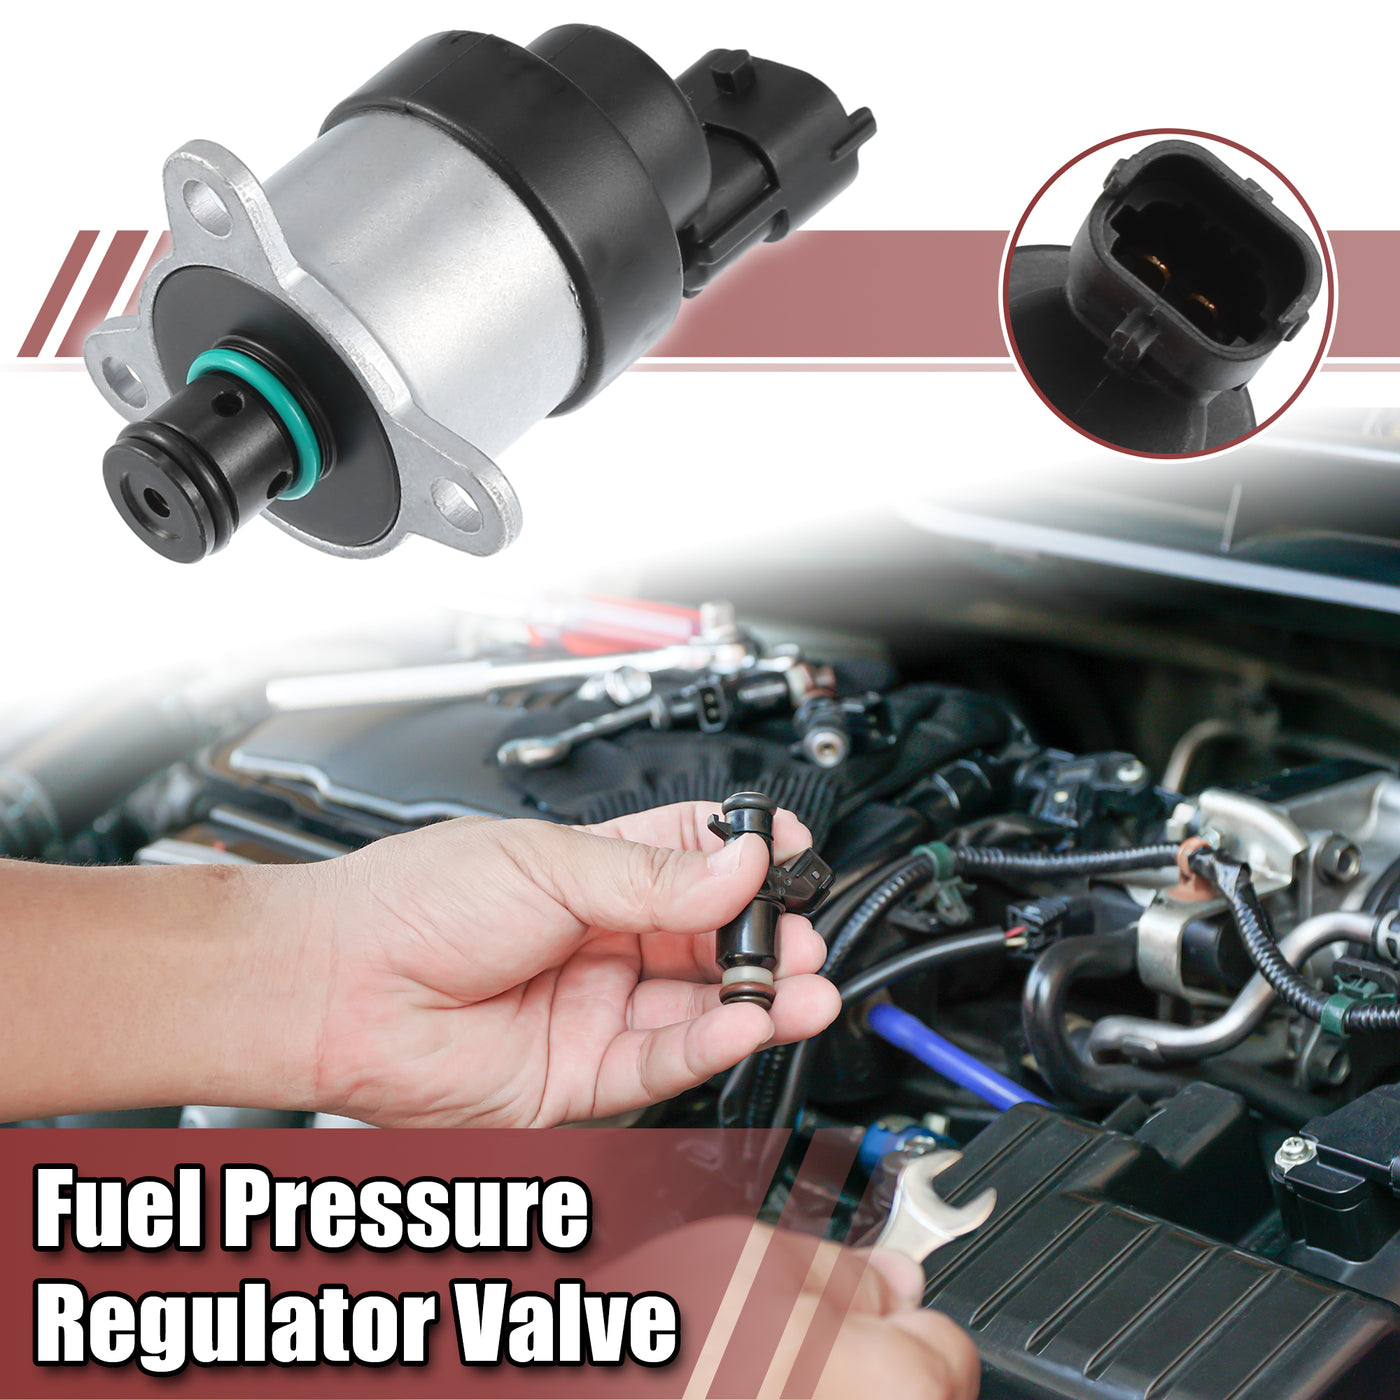 ACROPIX Fuel Pressure Regulator Valve Fuel Control Actuator Fit for HYUNDAI H-1 2006-2007 - Pack of 1